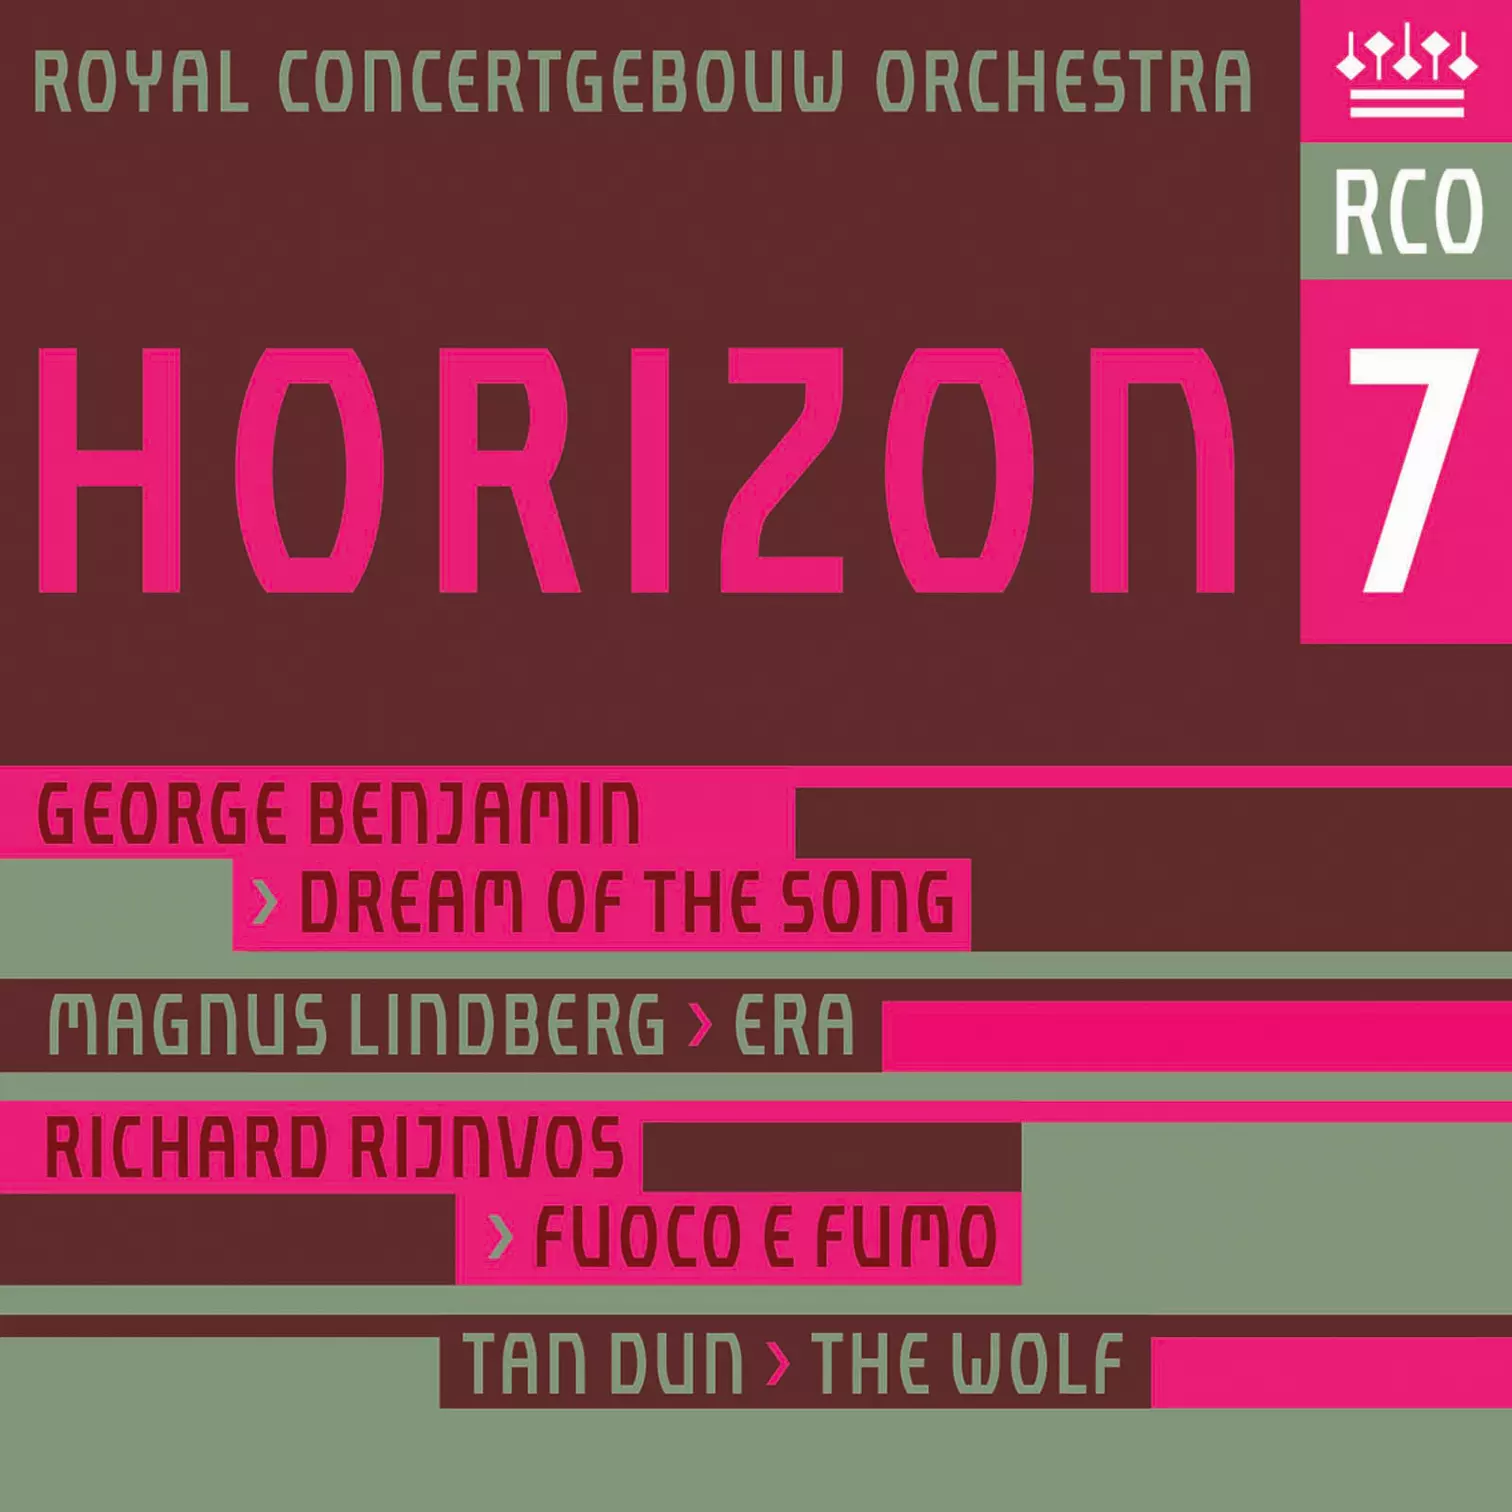 Royal Concertgebouw Orchestra, Horizon 7